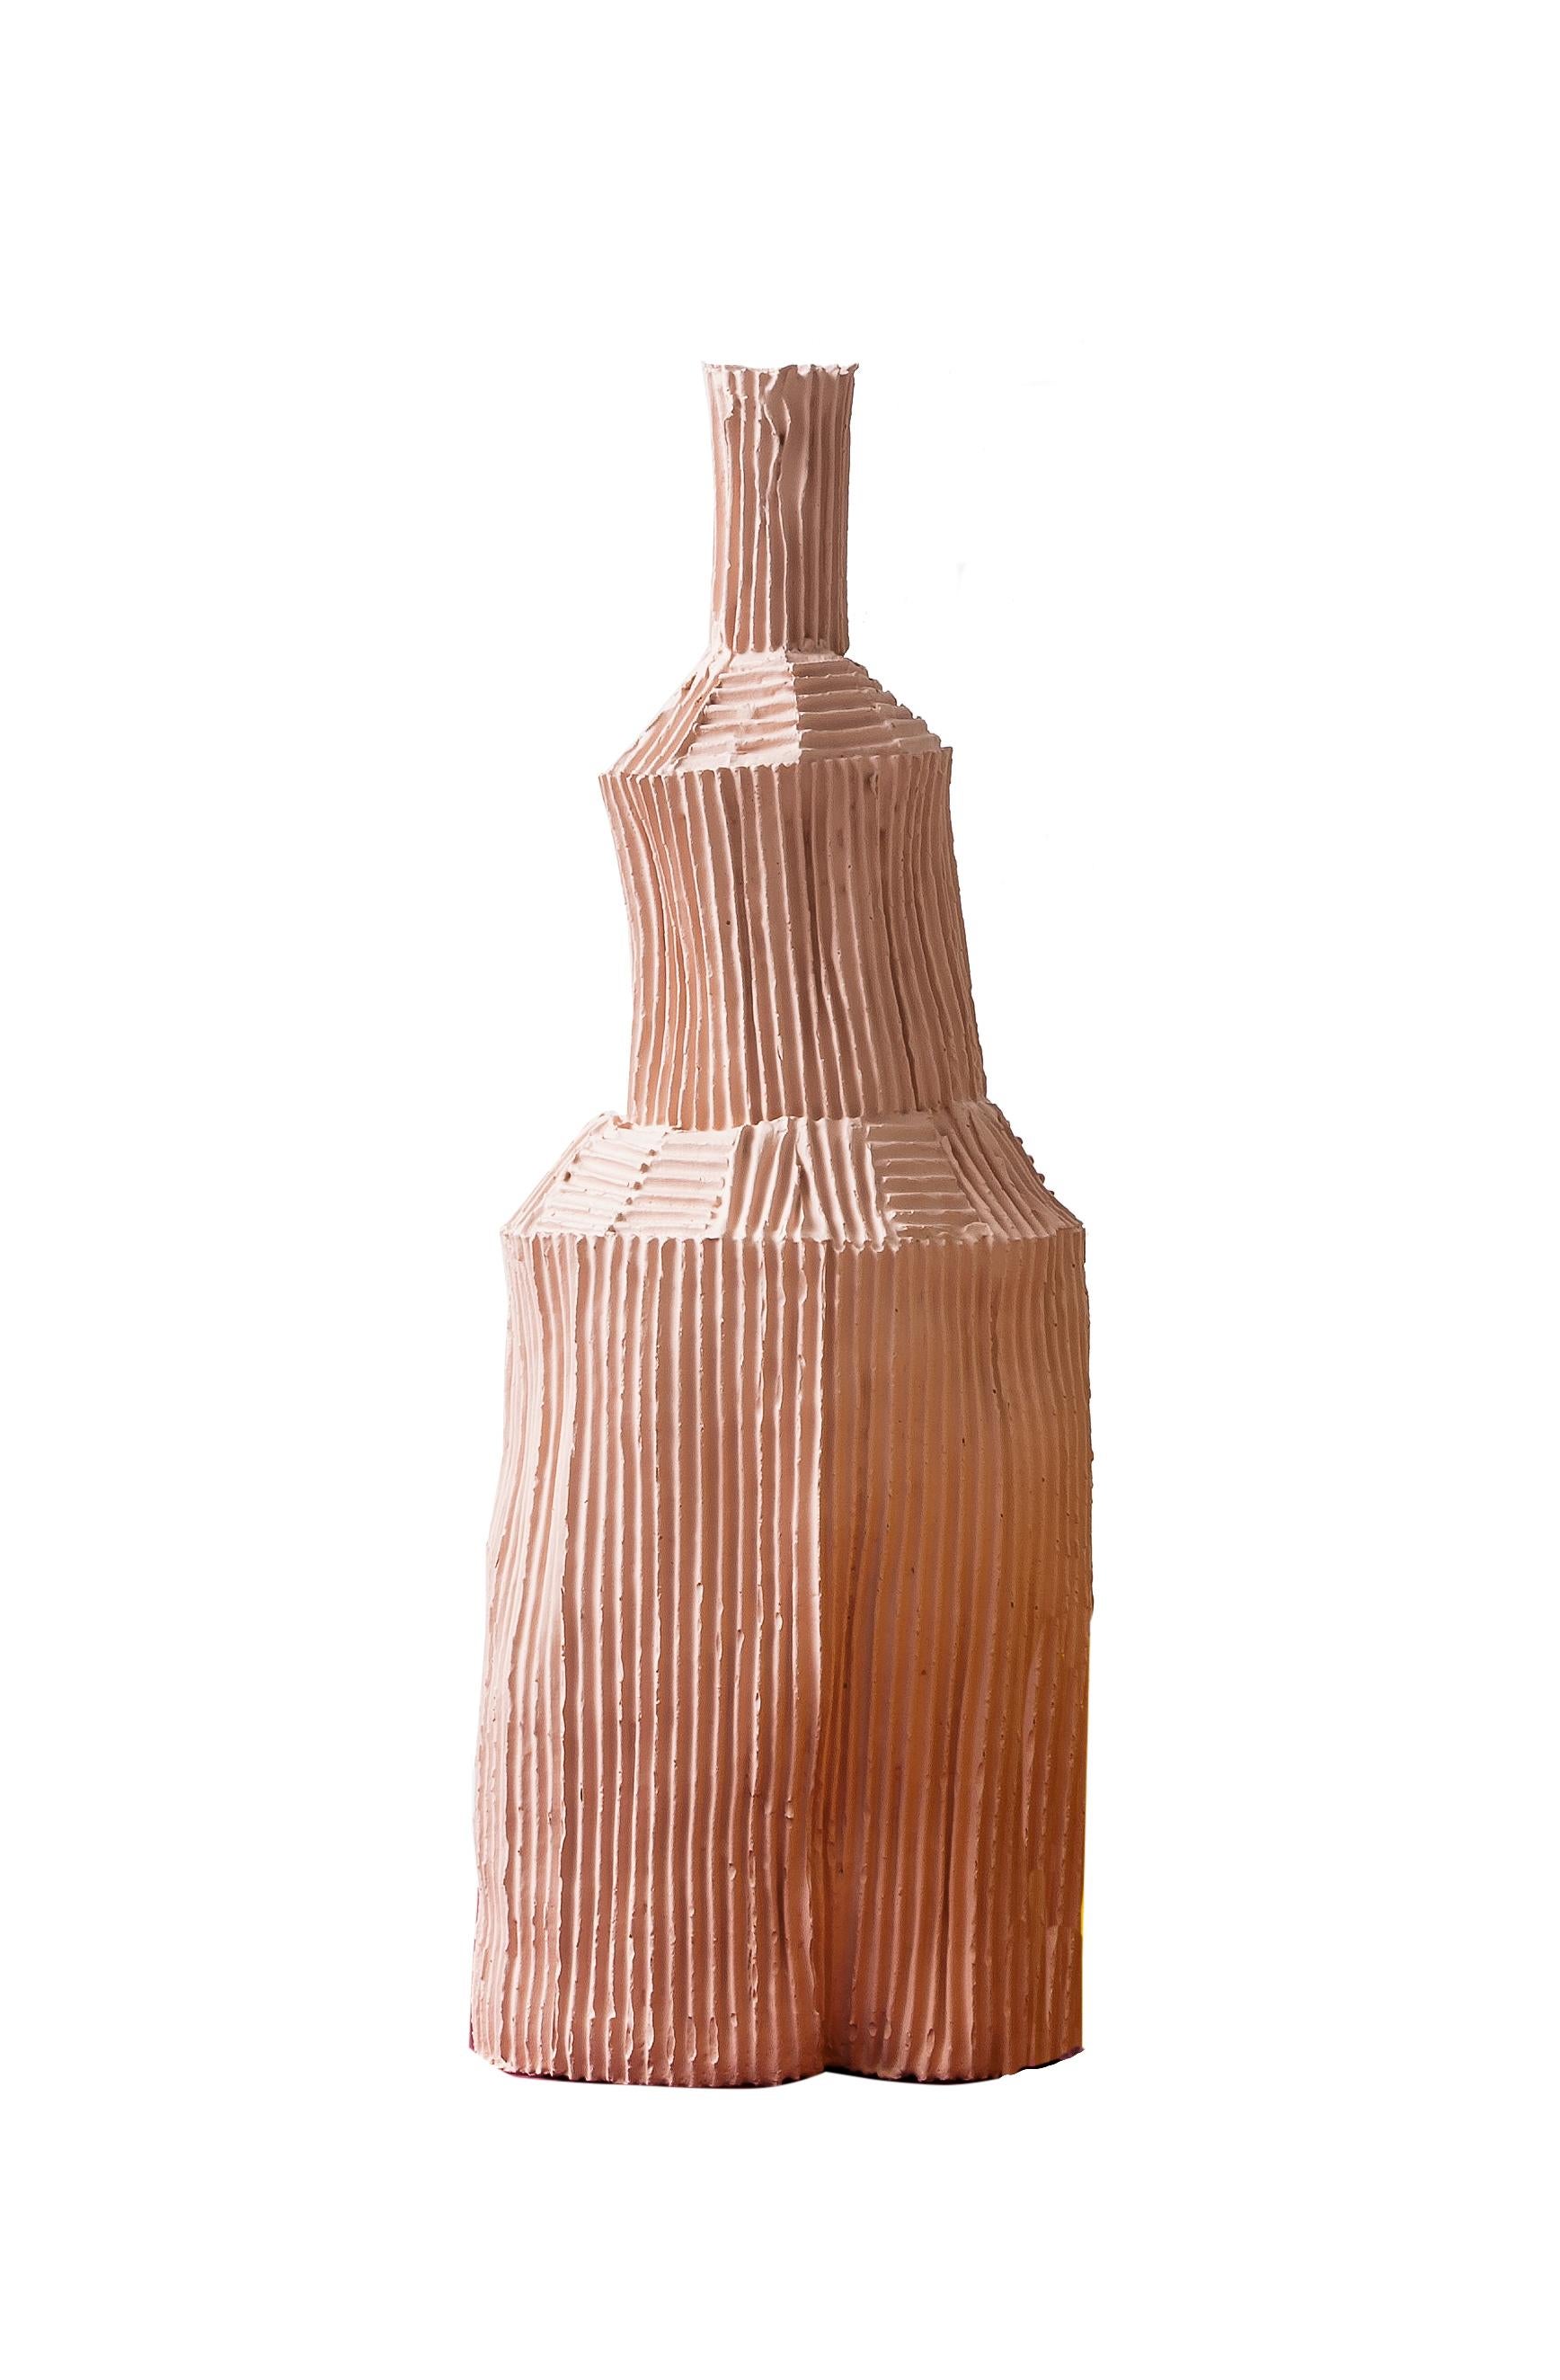 Modern Contemporary Ceramic Fide Corteccia Texture Pink Decorative Bottle For Sale